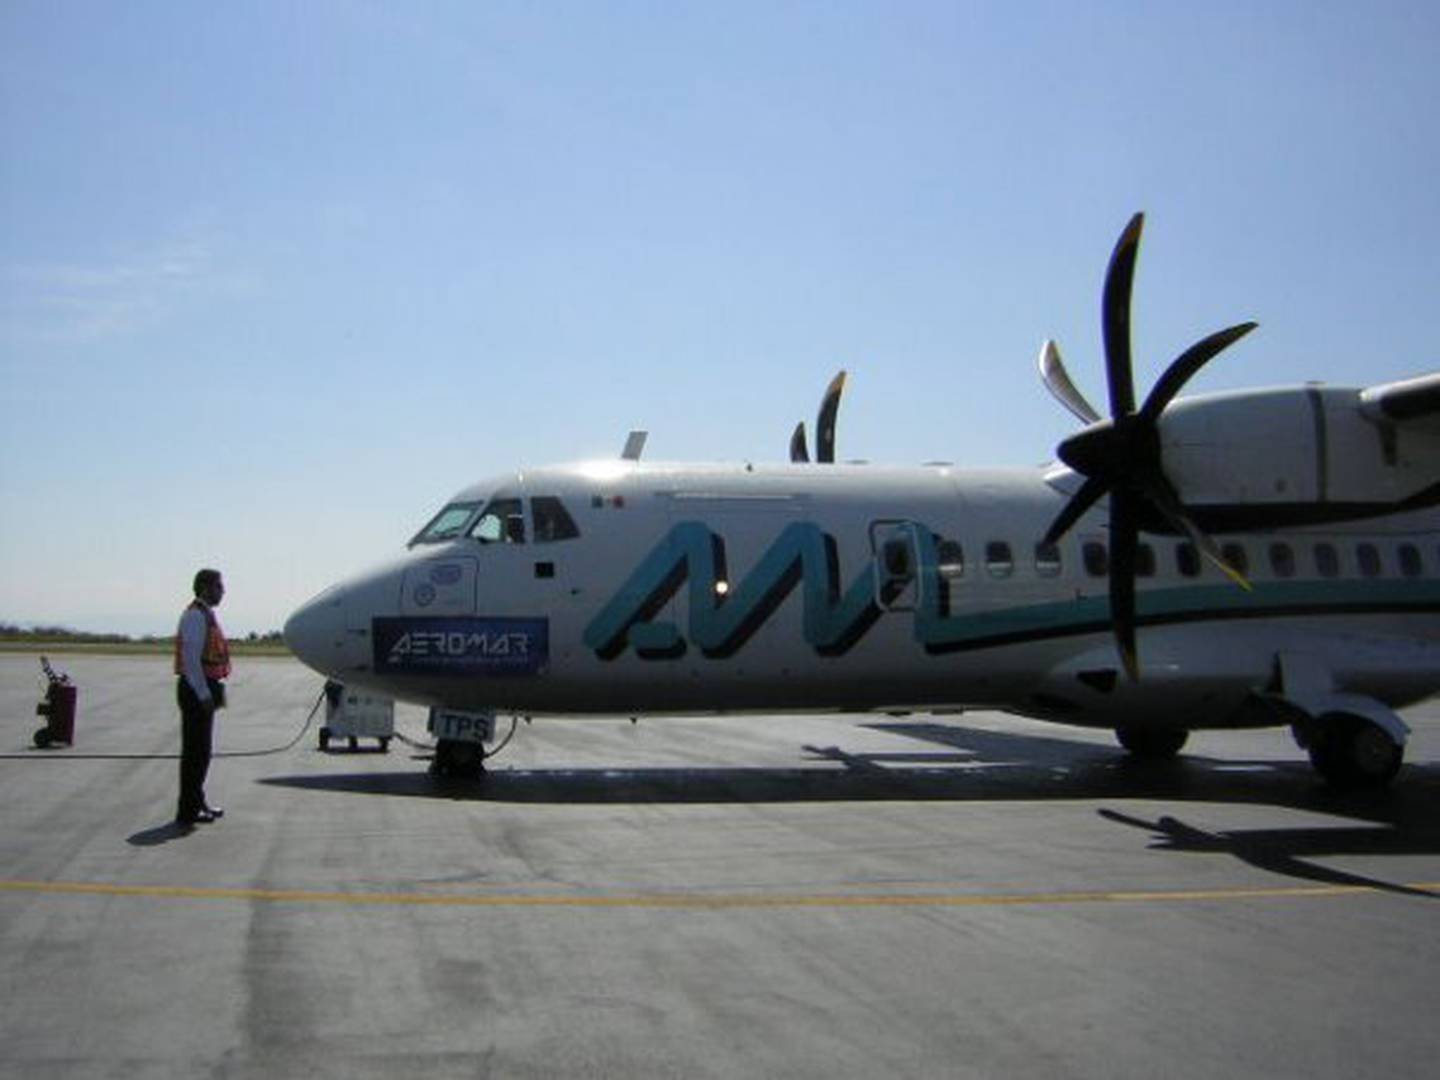 Aeromar declaró que realizó pagos al Sistema de Administración Tributaria (SAT) por MXN$130 millones, durante los cuatro años en que la empresa operó bajo la intervención de este organismo del Gobierno. Foto: Aeromar